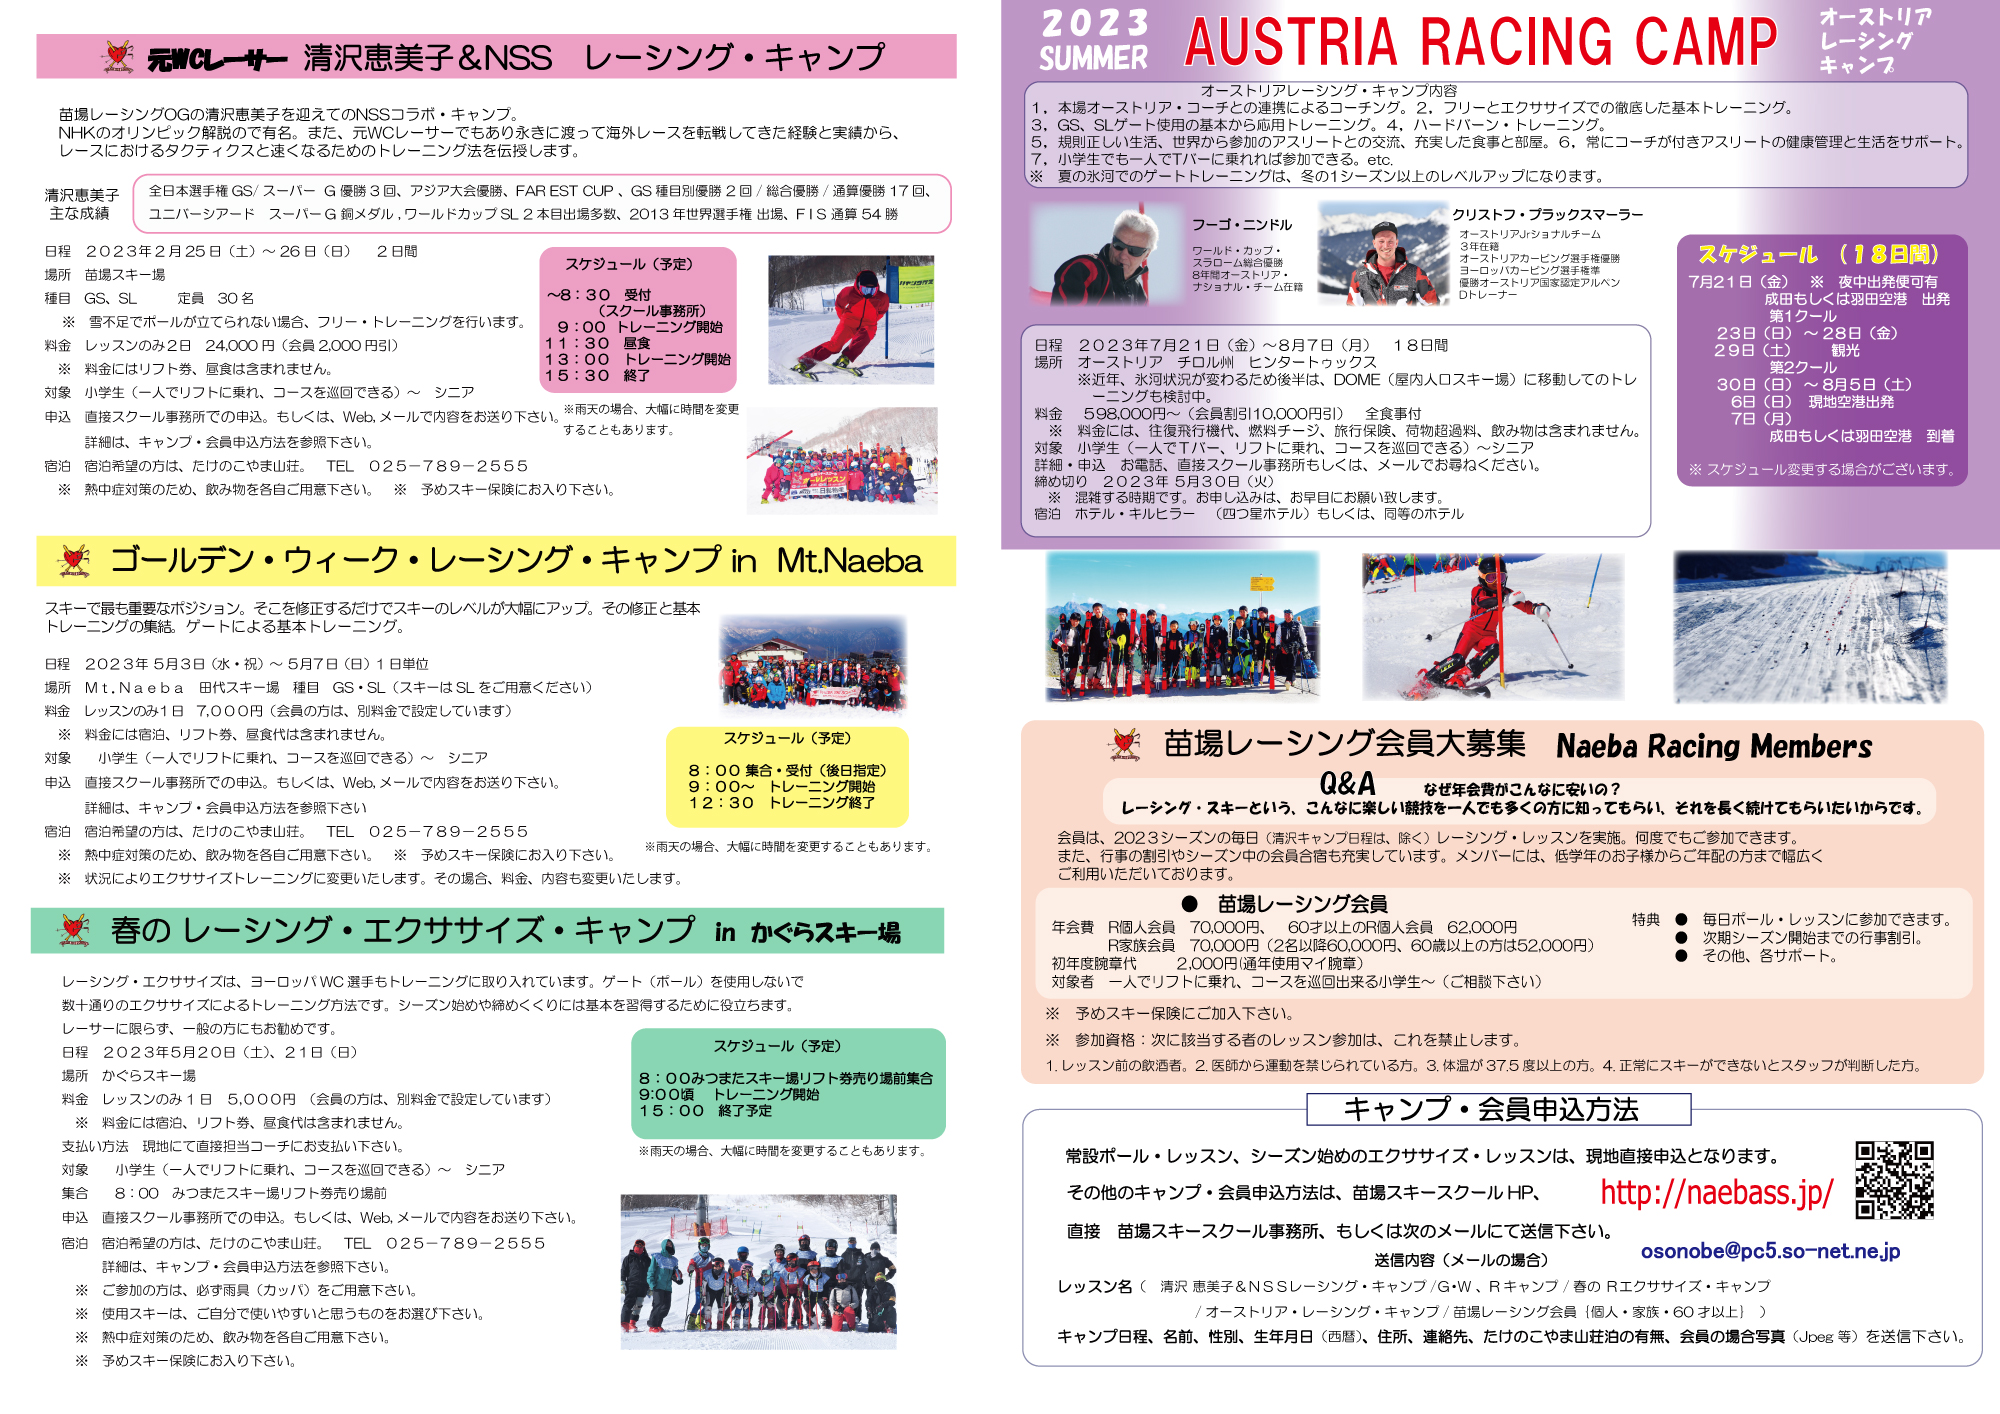 2023オーストリア・レーシング・キャンプ・パンフレット2